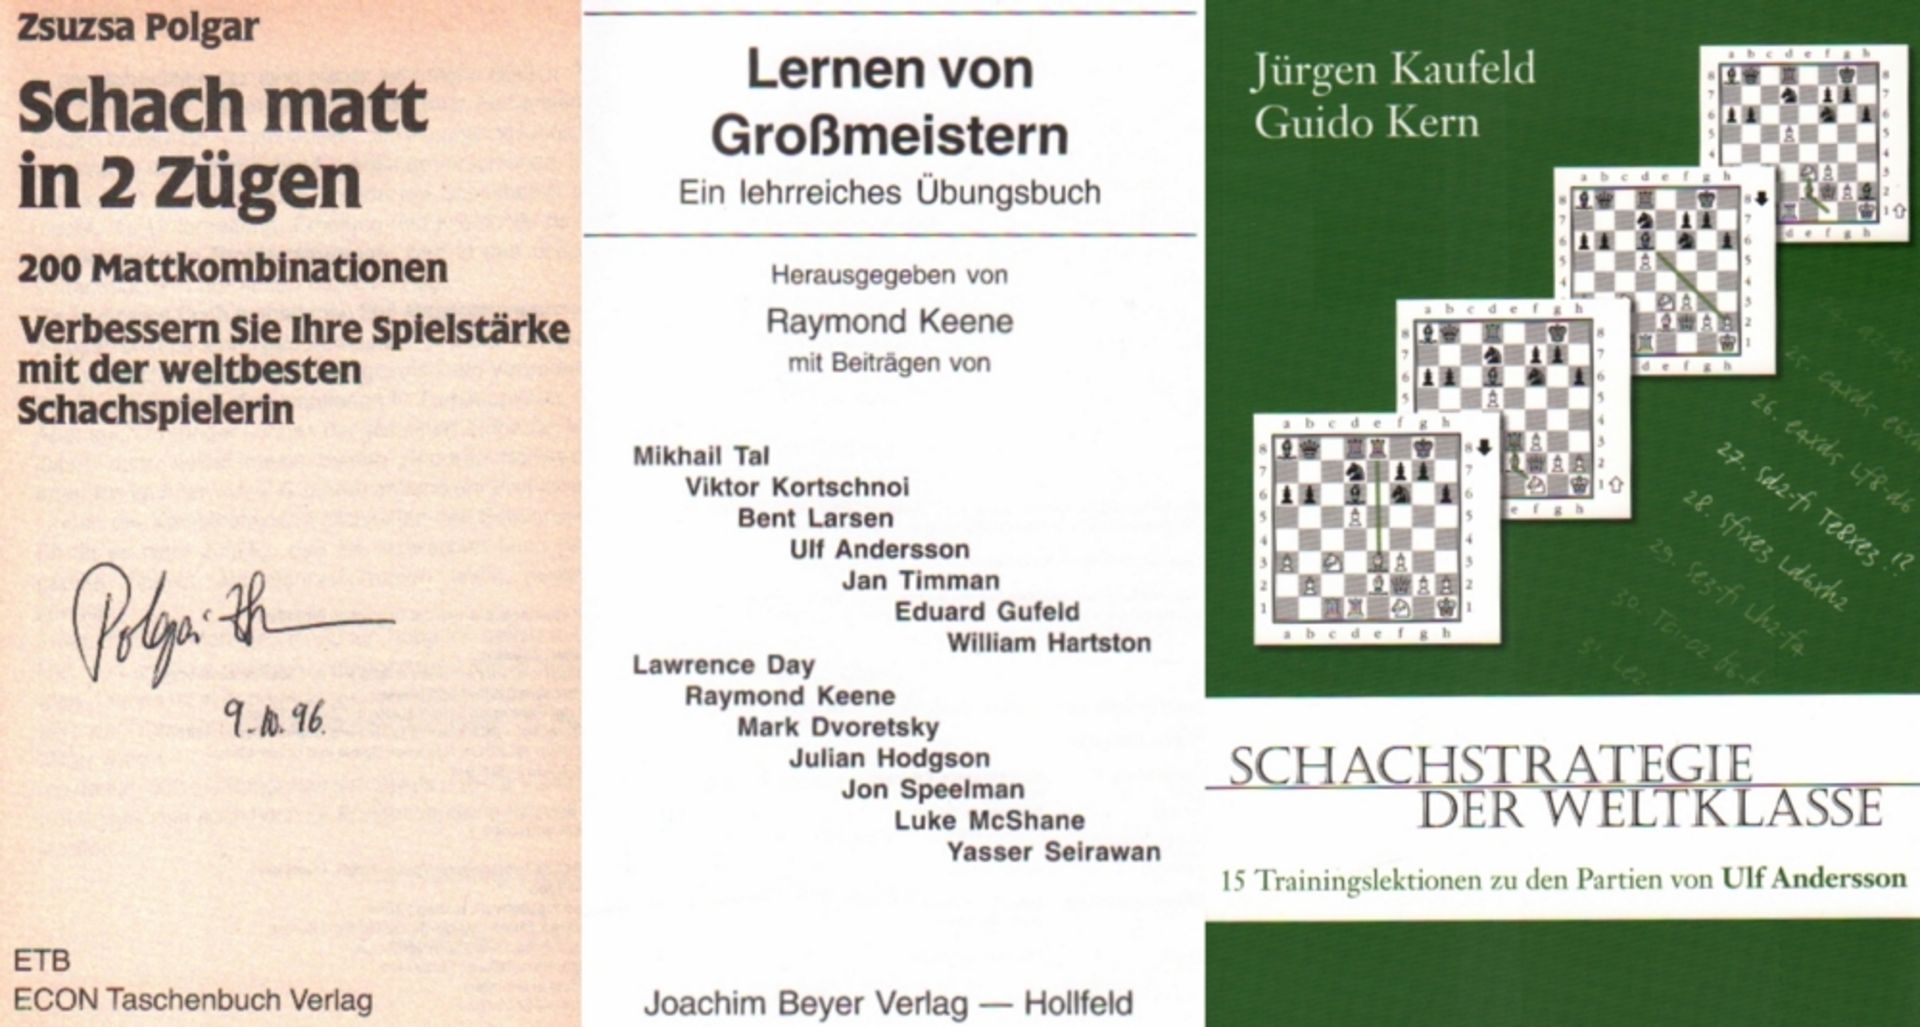 Polgár, Z. Schach matt in 2 Zügen. 200 Mattkombinationen … Düsseldorf, Econ Taschenbuch, ca. 1986.